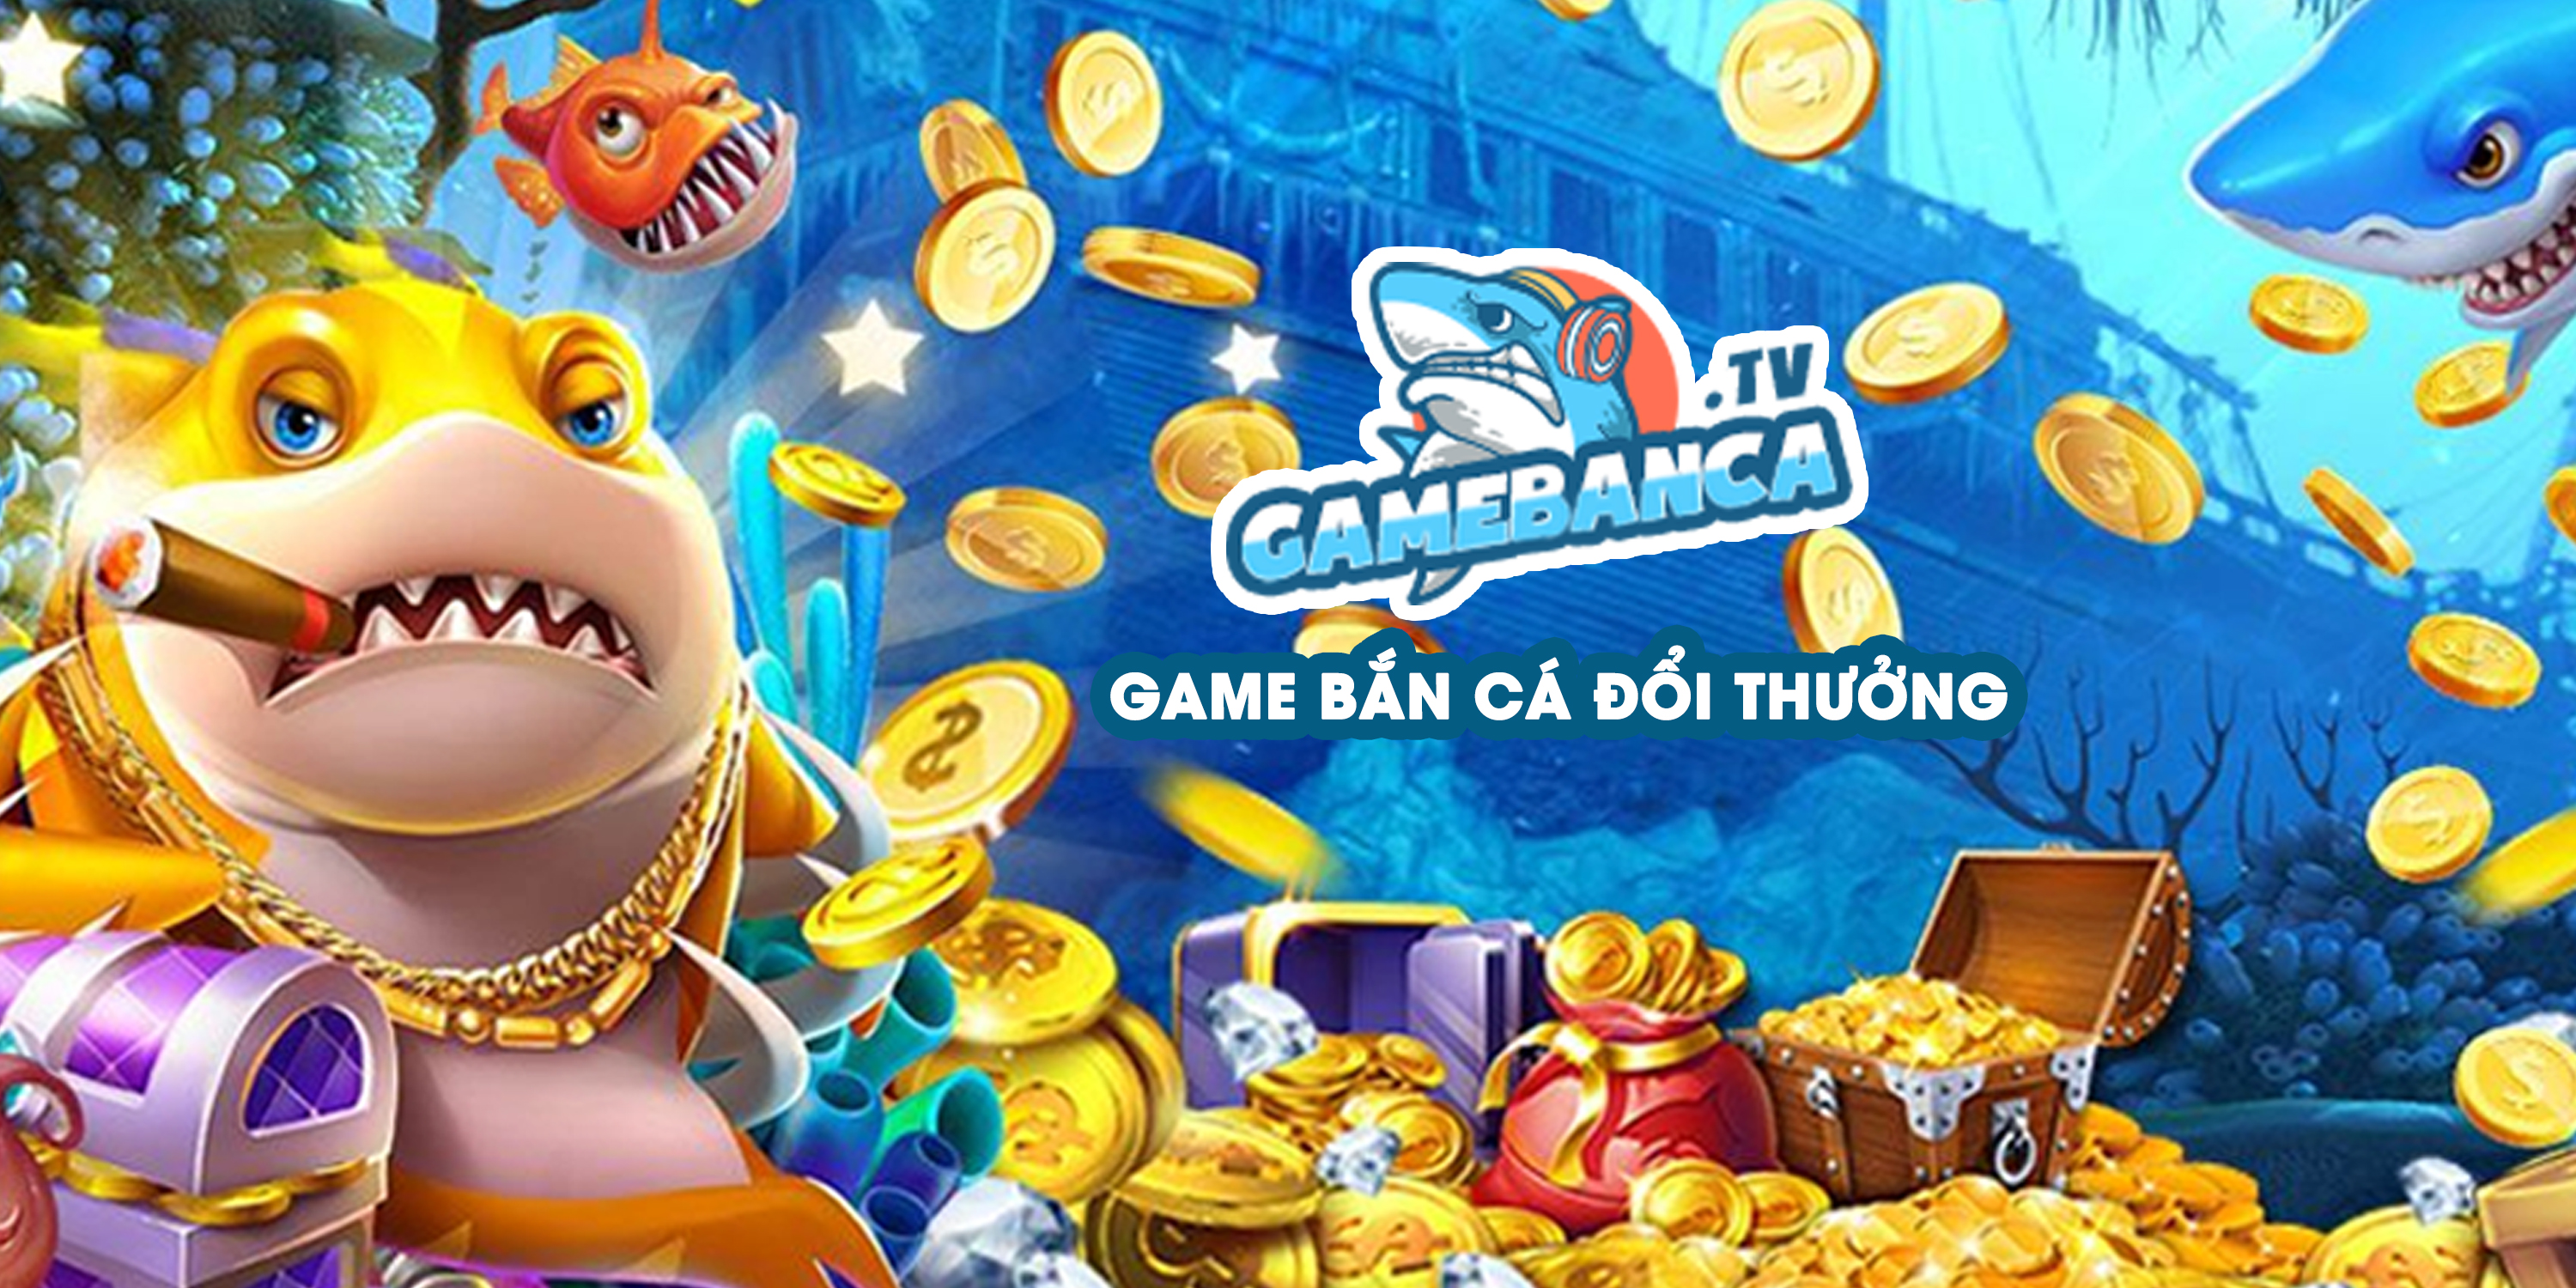 Cổng game bắn cá đổi thưởng Gamebanca TV mới nhất hiện nay